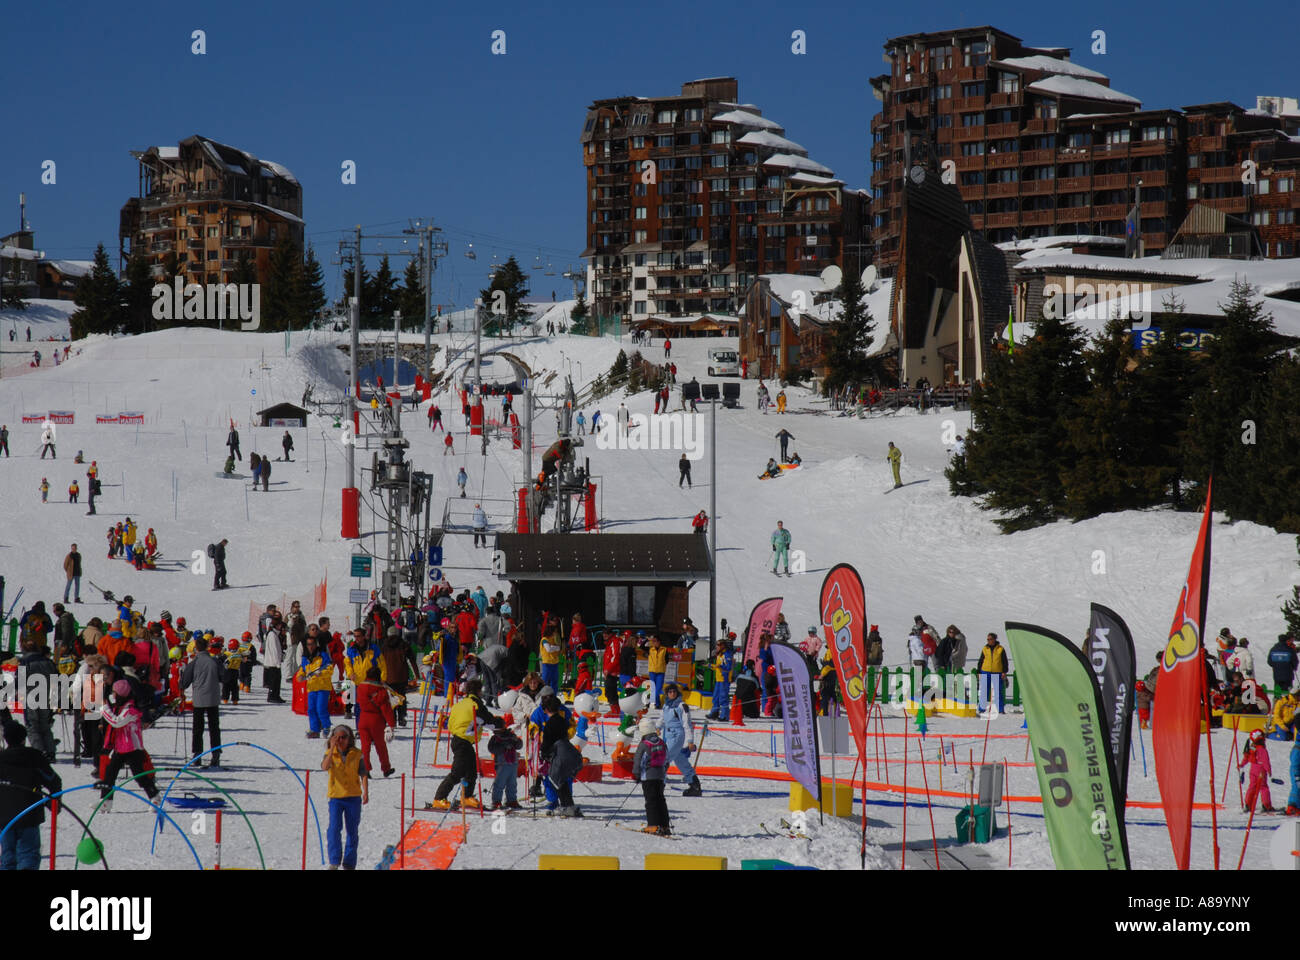 Appartement immeuble en hiver Ski Avoriaz ville artificielle pour le tourisme de ski Savoie Alpes France Banque D'Images